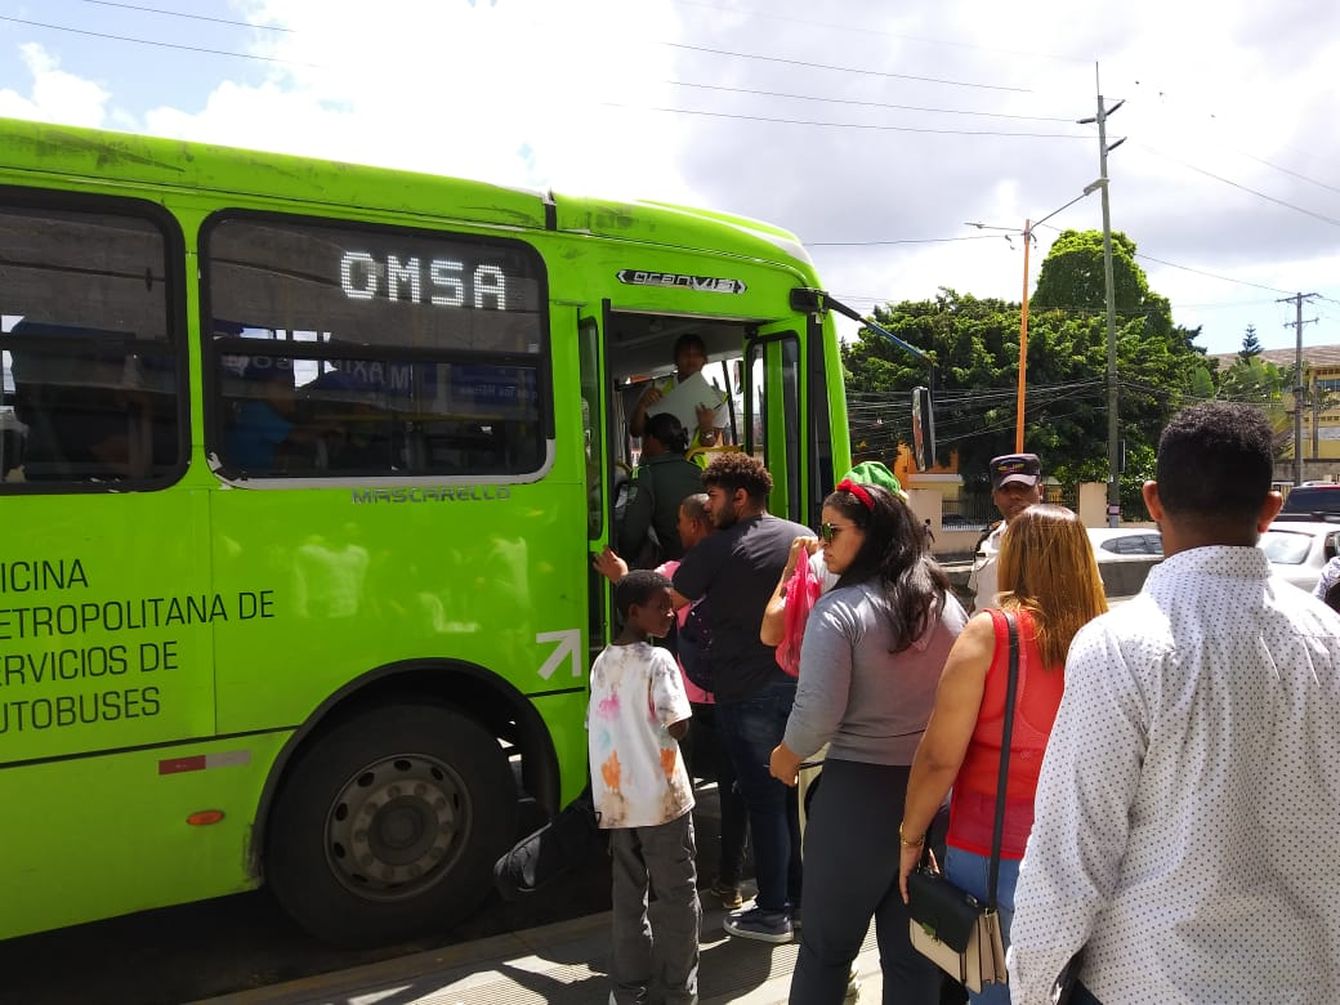 REPÚBLICA DOMINICANA: OMSA anuncia transporte gratis durante feriado del 1 de enero y horarios durante festividades de fin de año y Año Nuevo